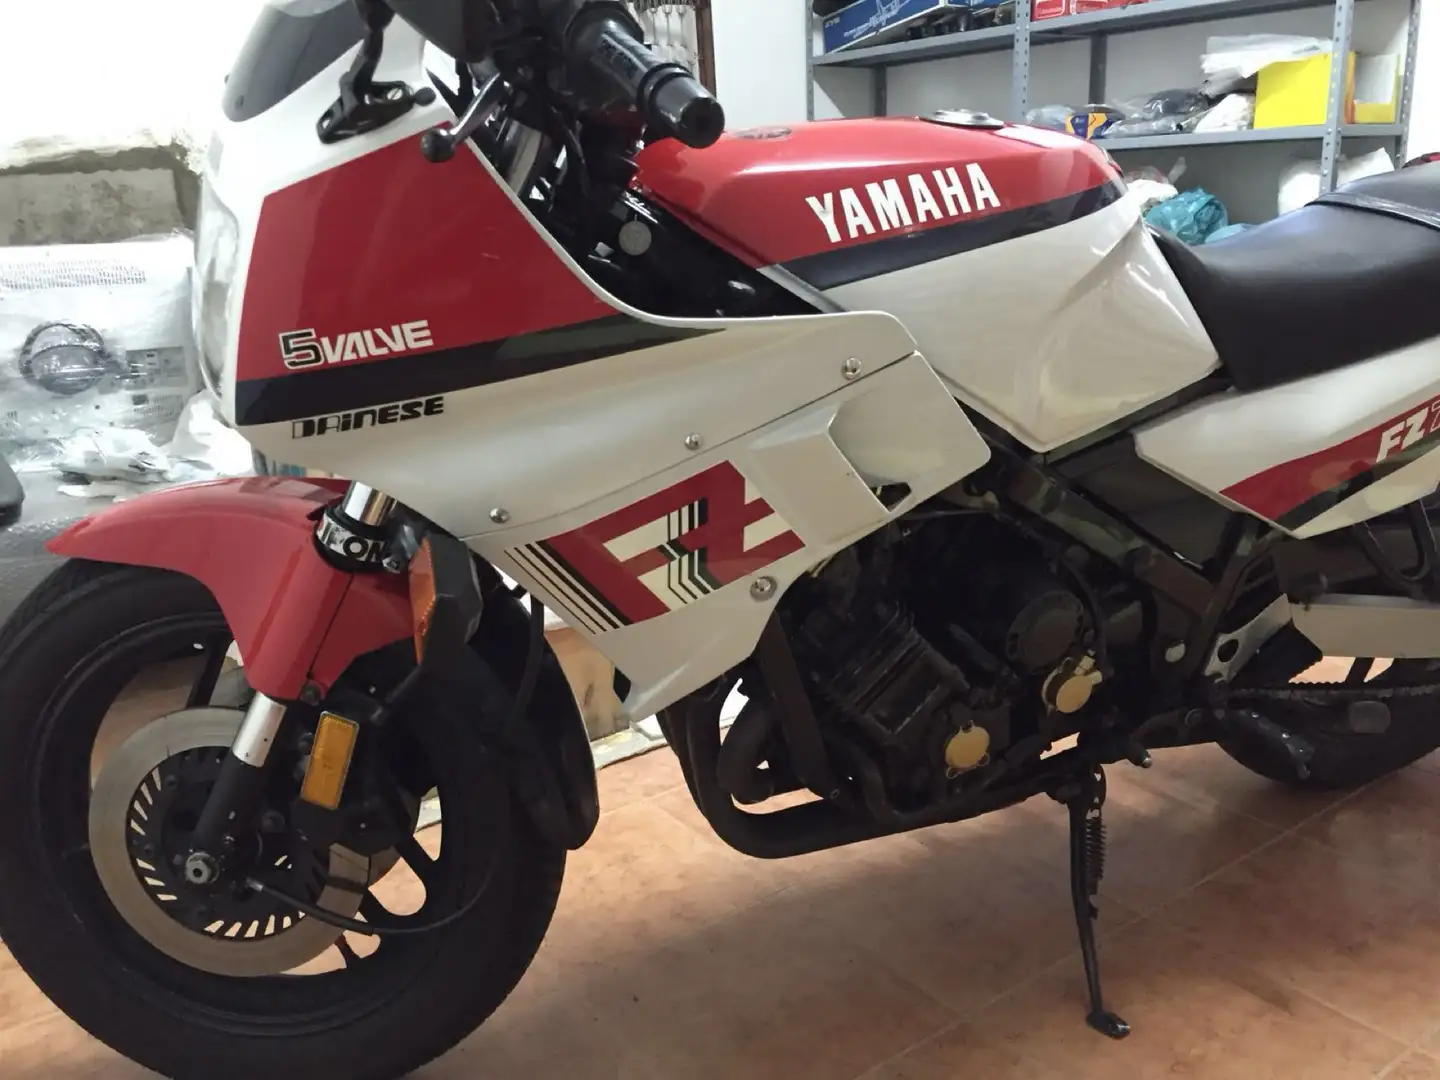 Yamaha FZ 750 immatricolazione canada colorazione bianca rossa Білий - 1